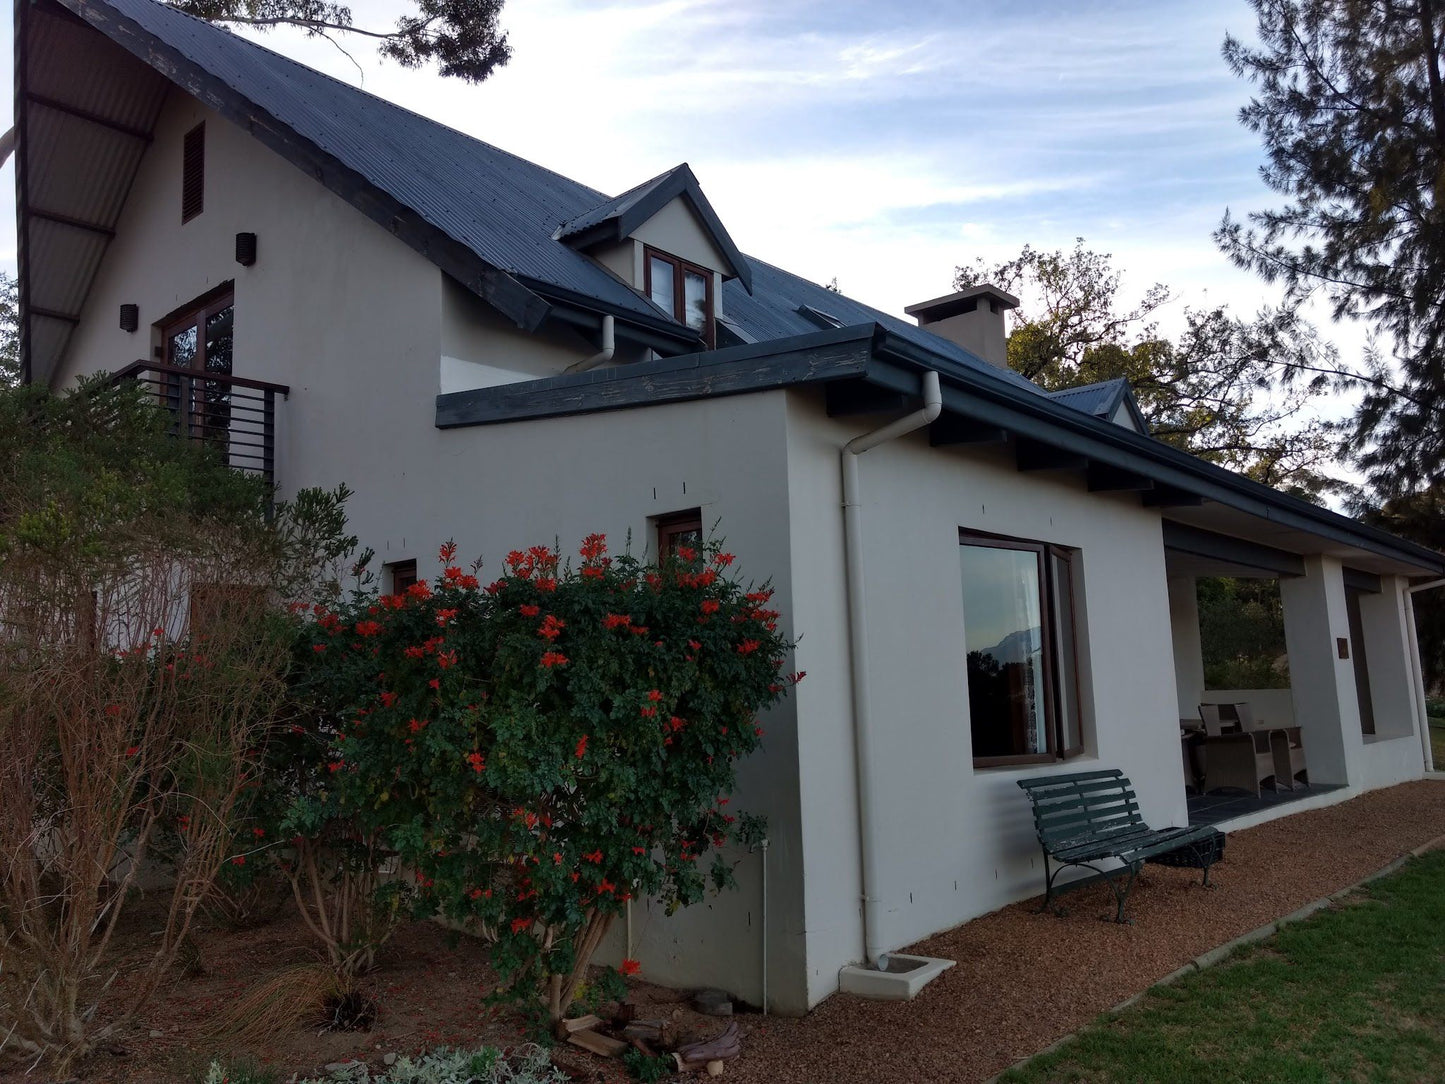  Diemersfontein Wine & Country Estate